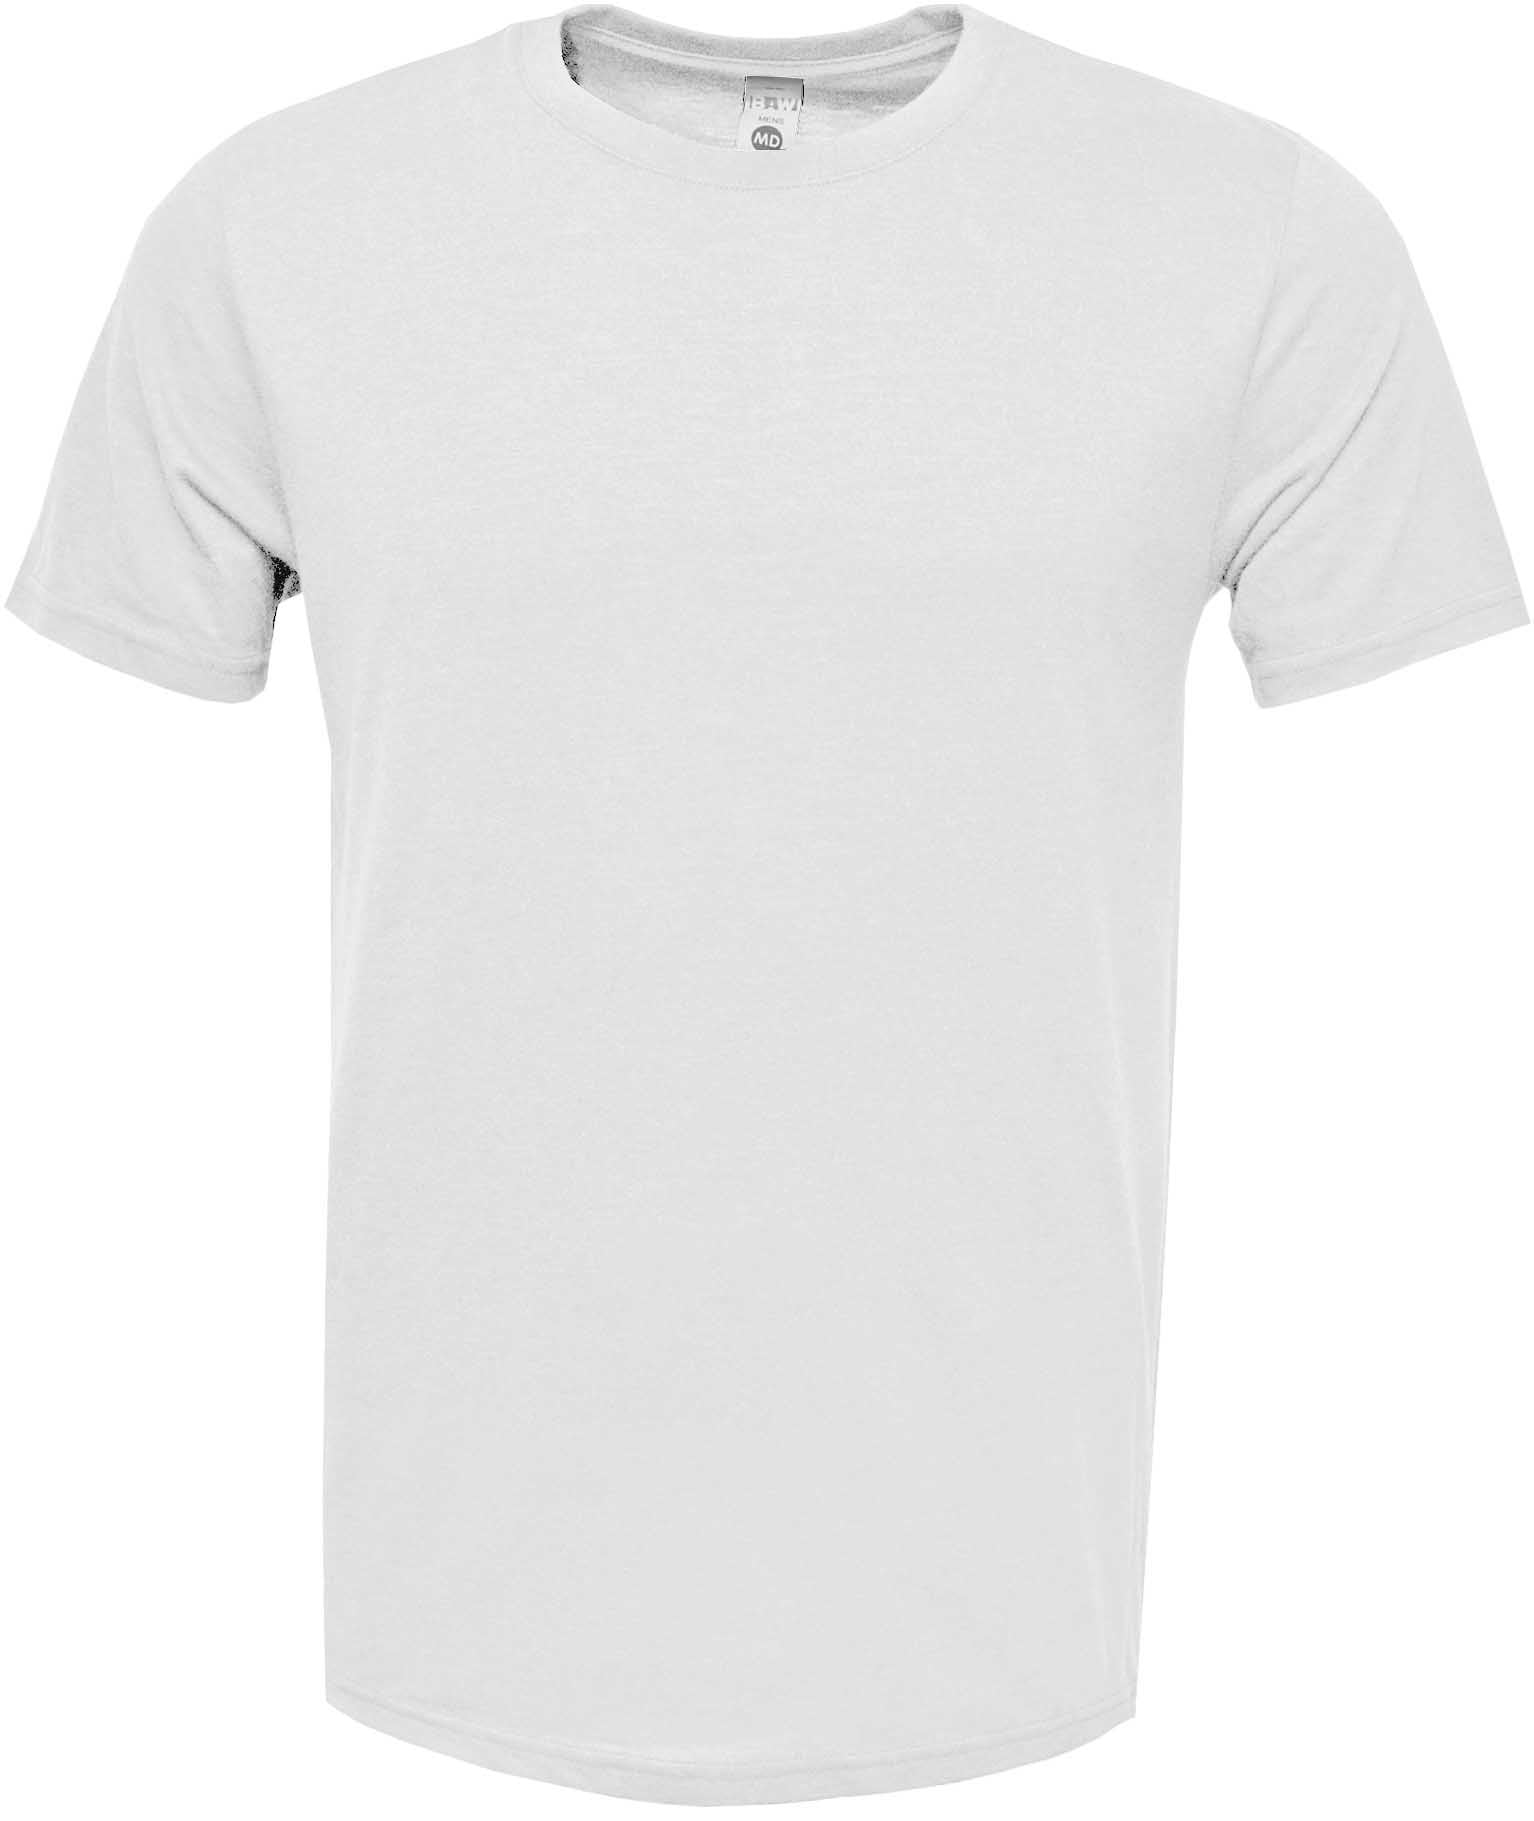 Ymosrh Men's Shirts US Size Large Blank Custom T-Shirt Heat Transfer  Sublimation Short Sleeve T-Shirts